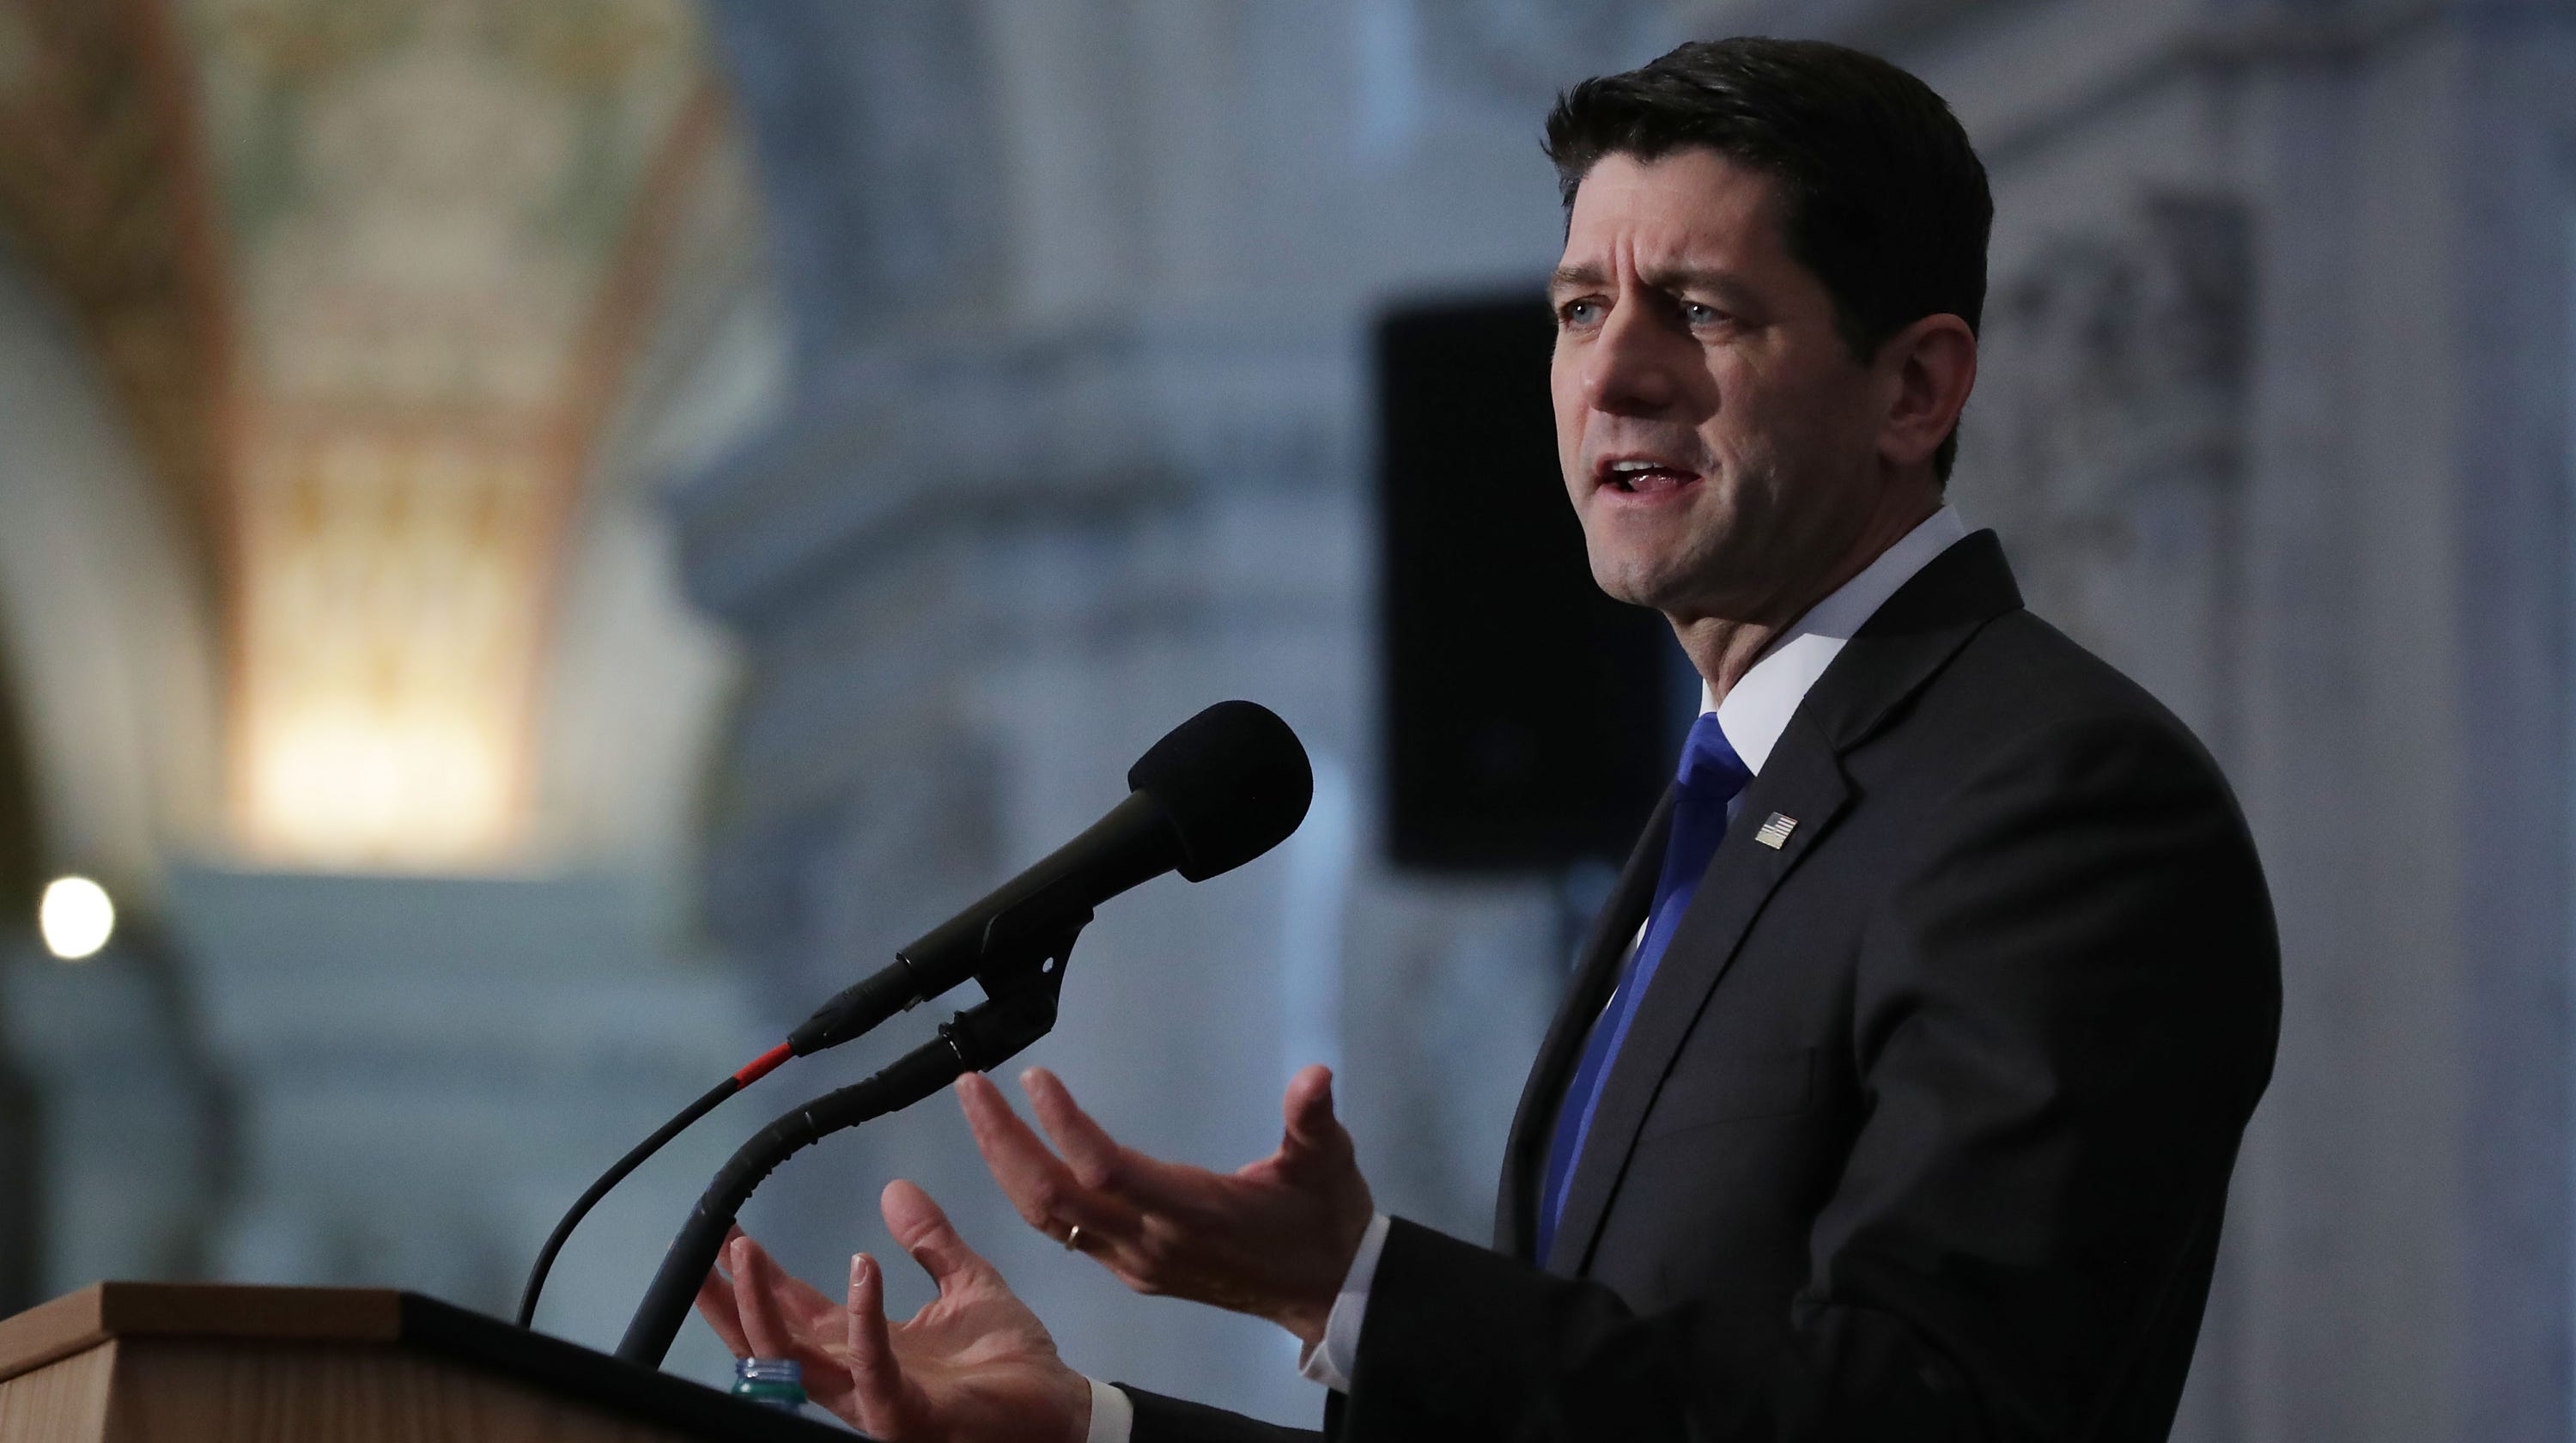 Paul Ryan touts record, decries 'broken politics' in farewell speech